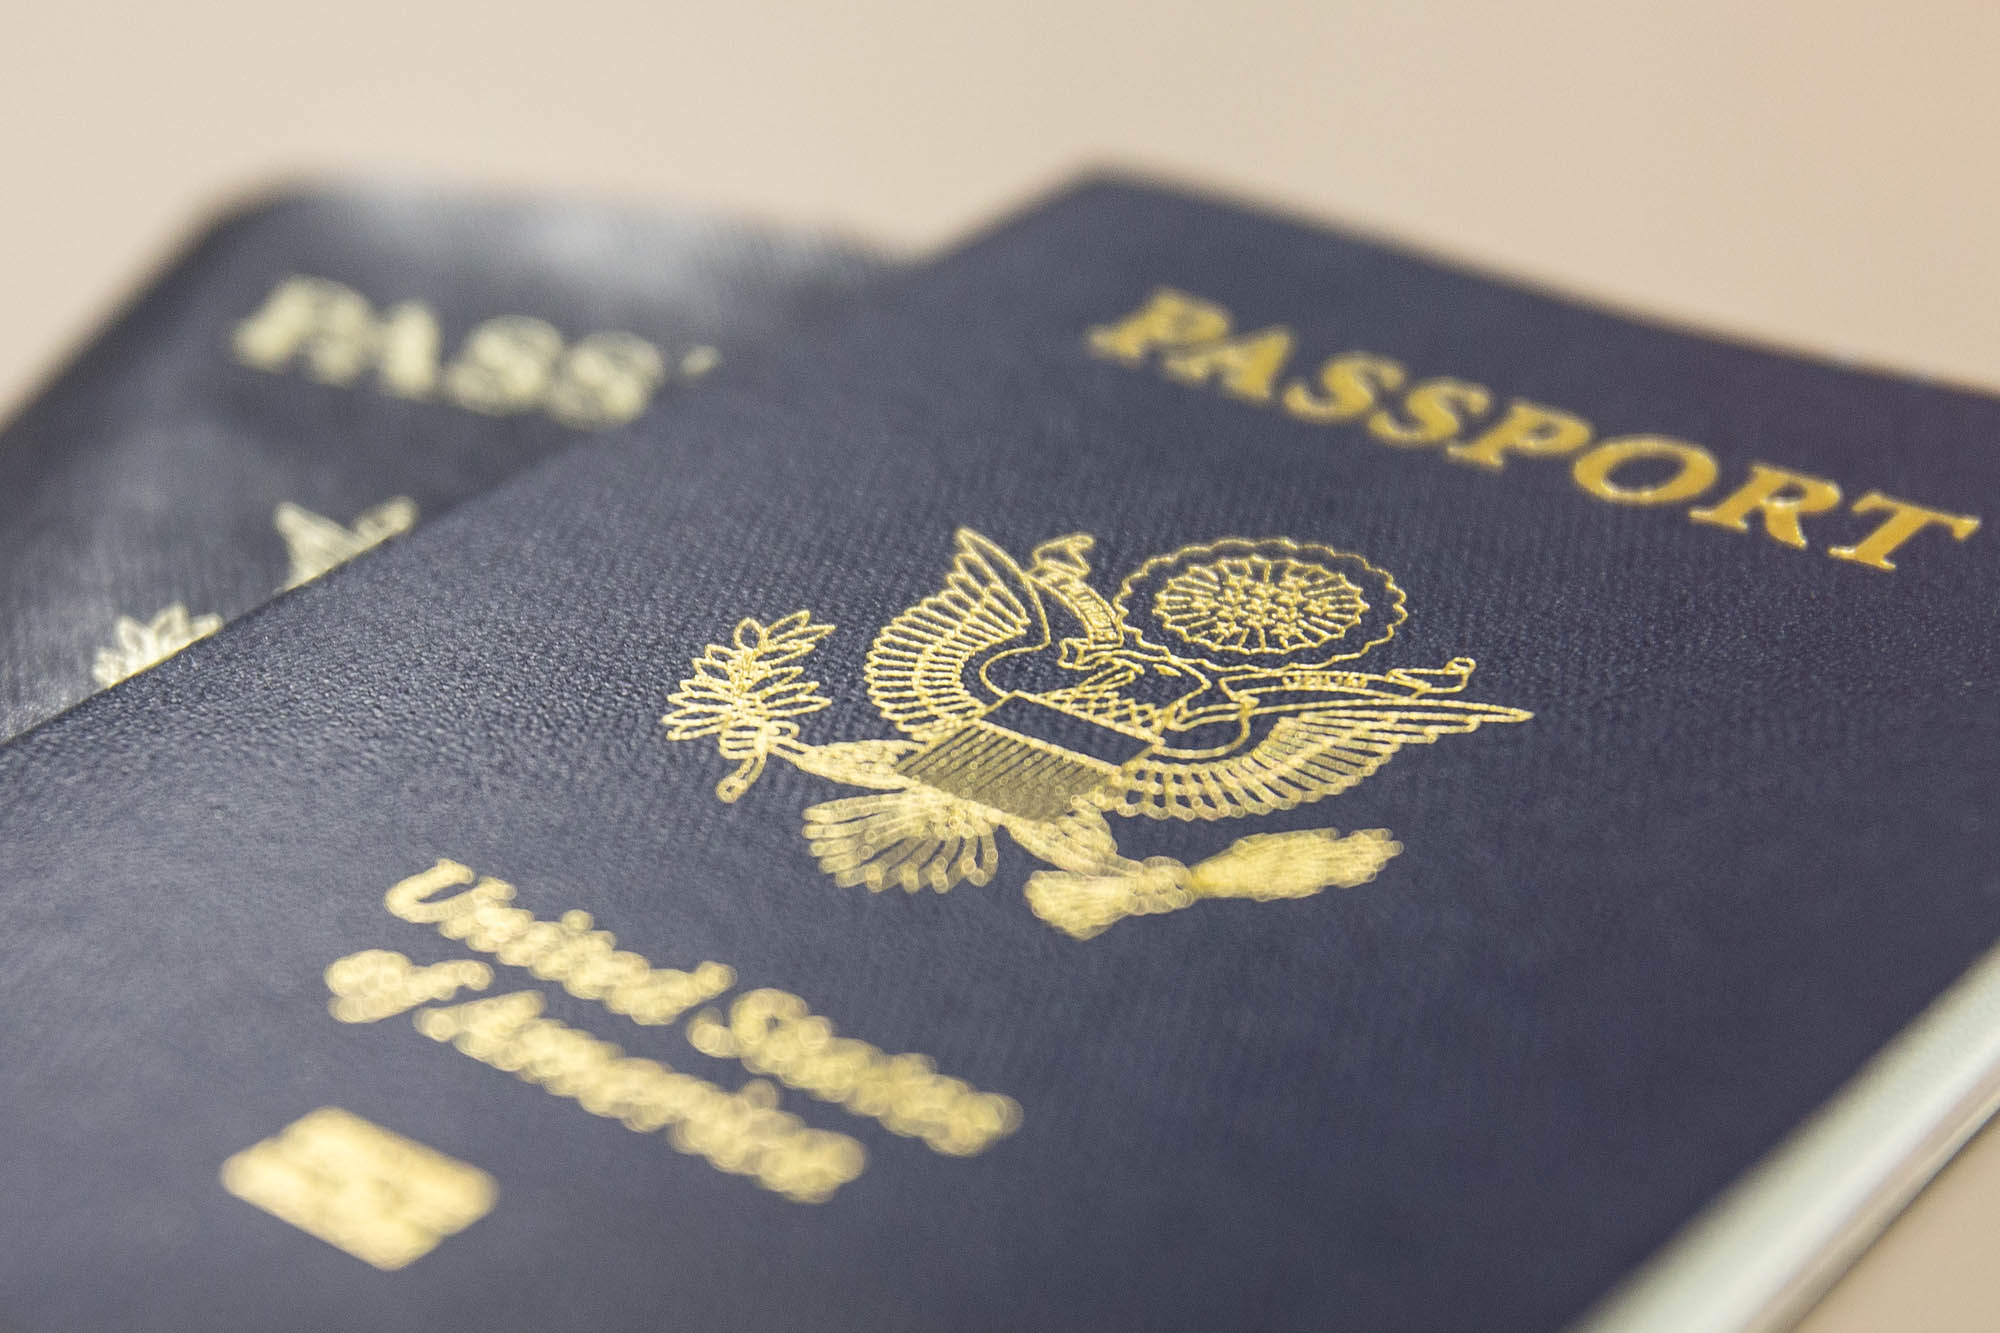 Passport Service Offered Next Week at U.Va. as Part of International ...